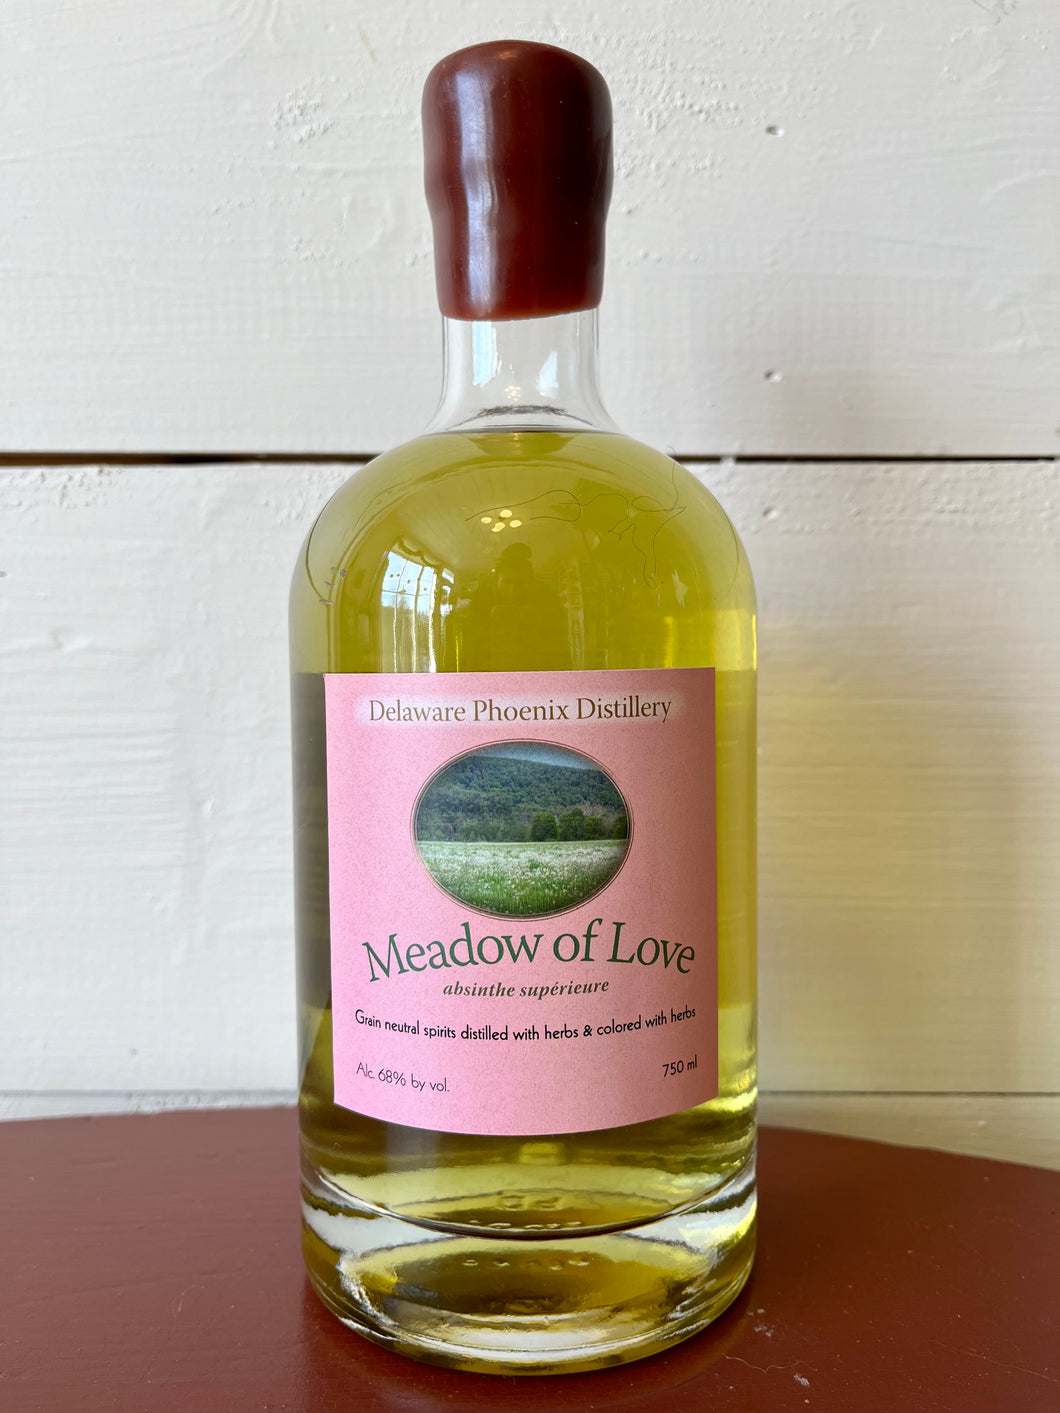 Delaware Phoenix Distillery, 'Meadow of Love' Absinthe